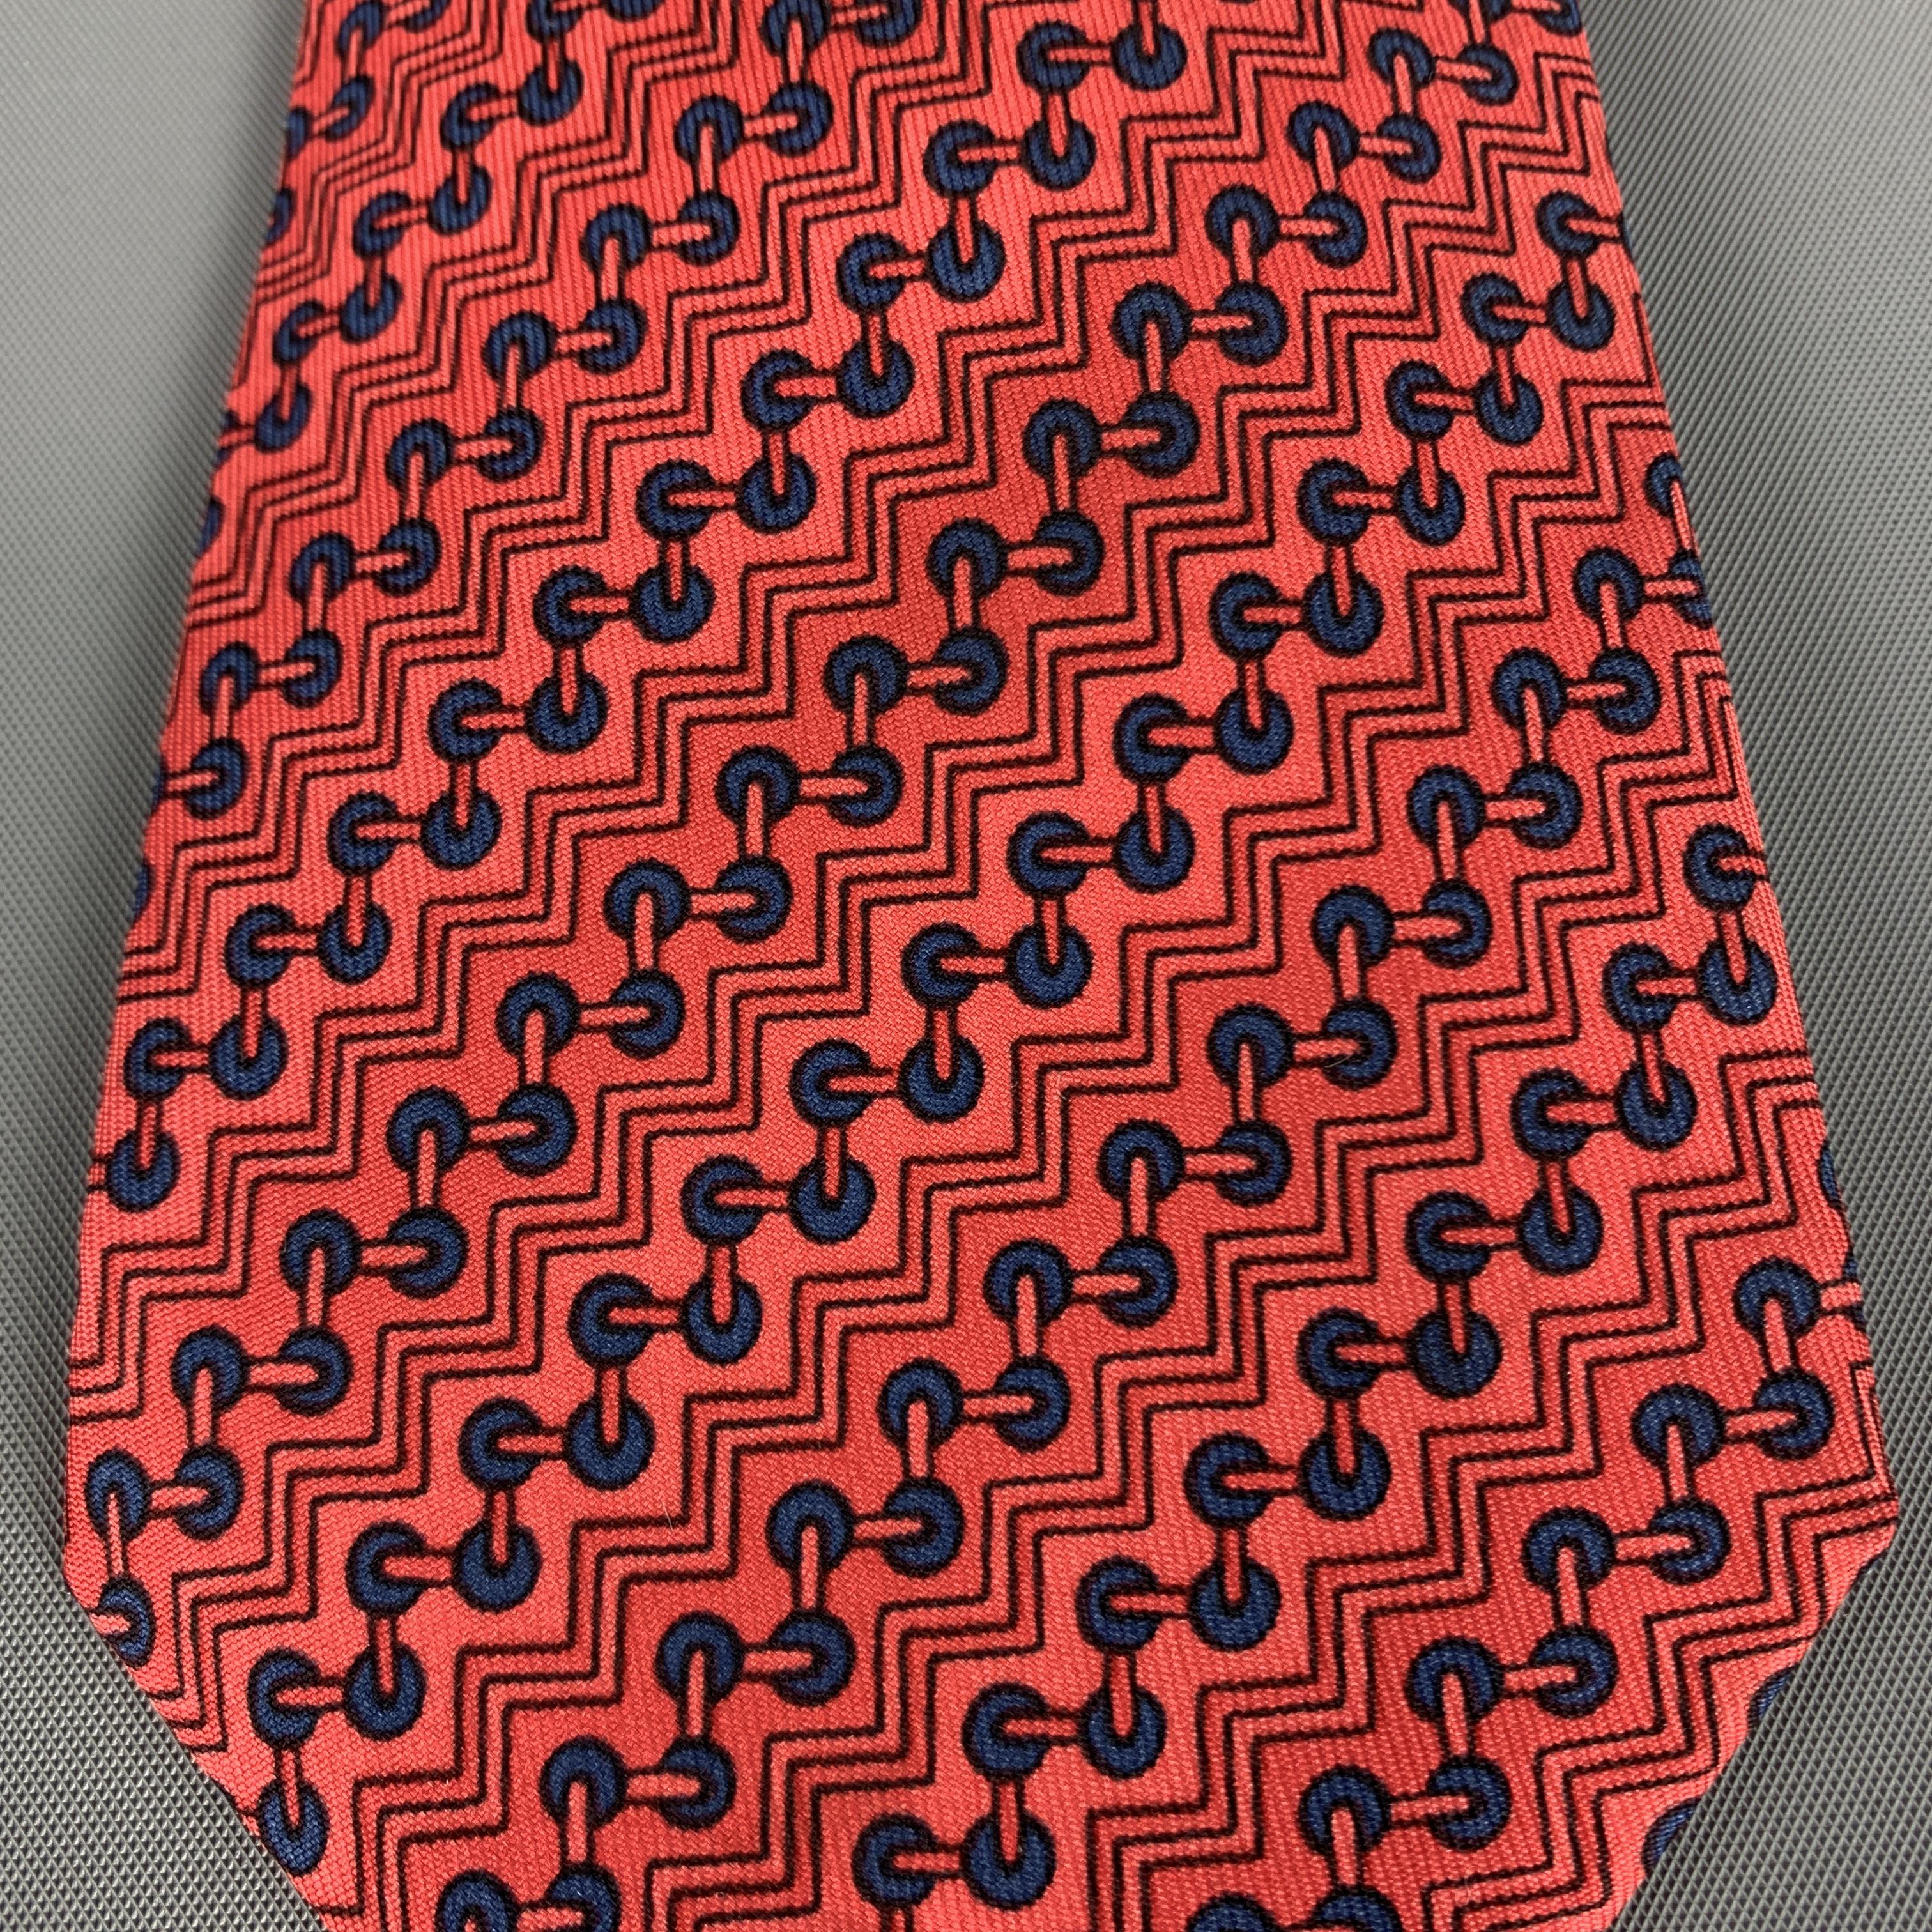 hermes red tie